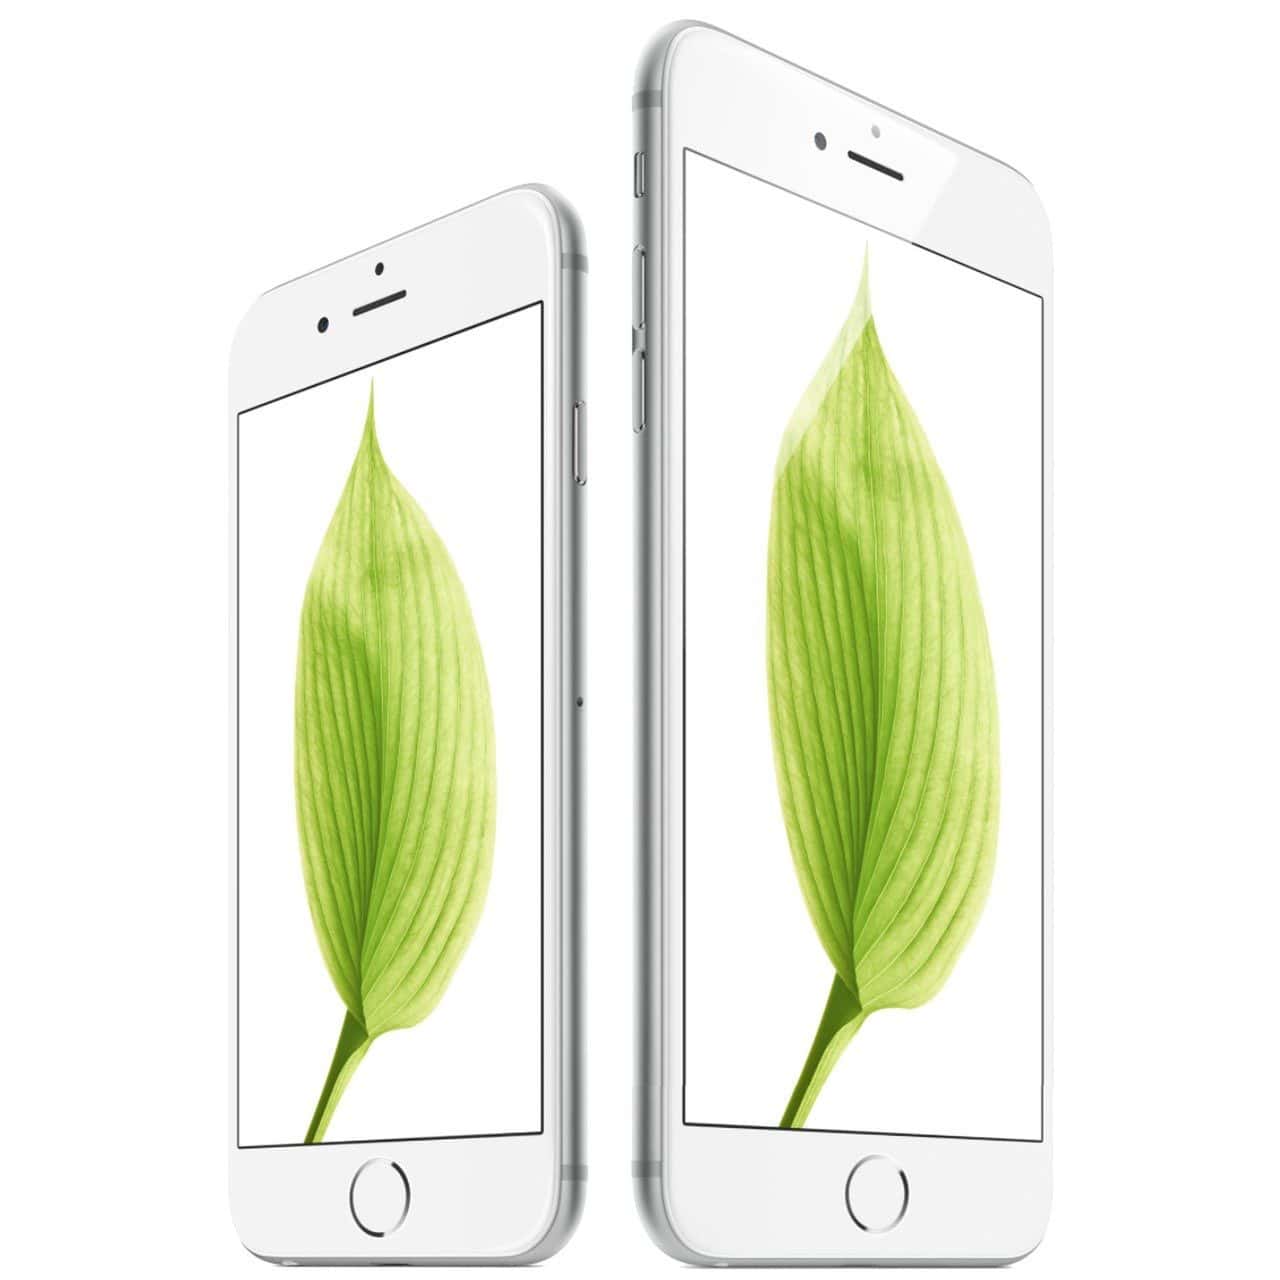 Omgekeerde pen band Apple iPhone 6s kopen met abonnement: vergelijk prijs iPhone 6s